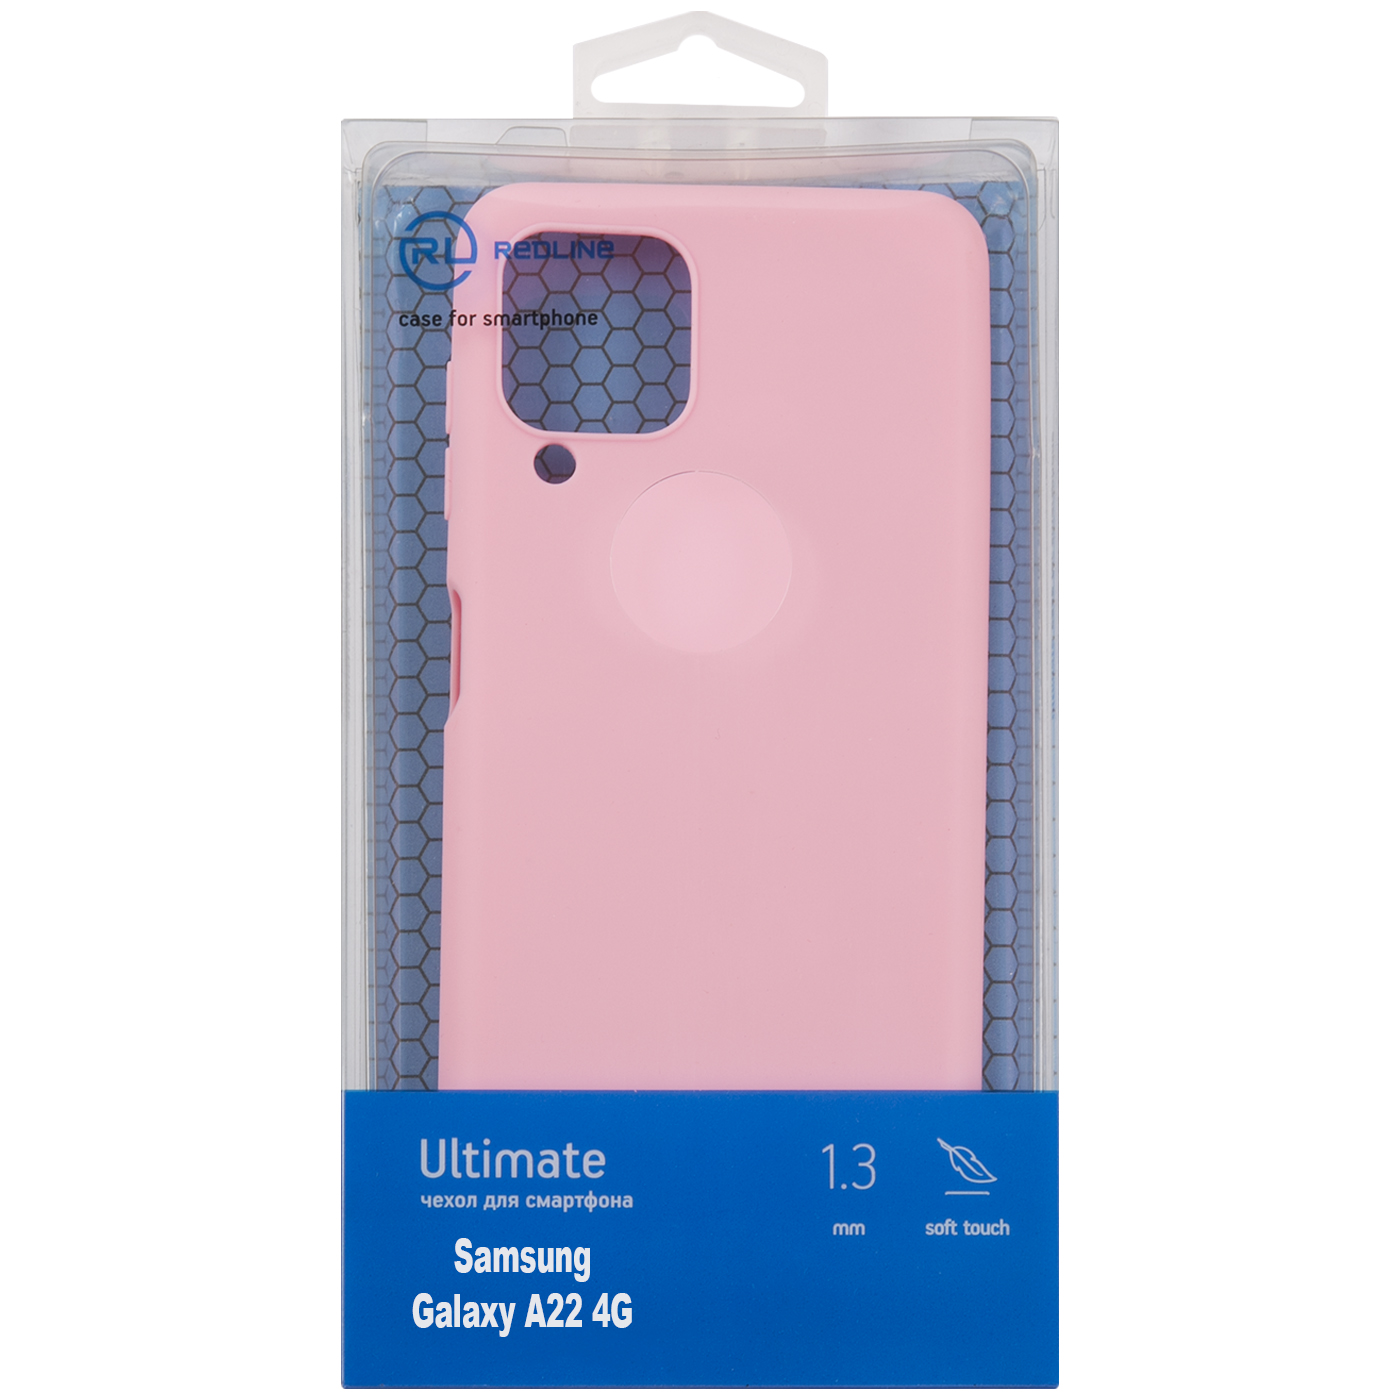 Чехол защитный Red Line Ultimate для Samsung Galaxy A22 4G, розовый УТ000025033 чехол red line для samsung galaxy a22 4g прозрачный